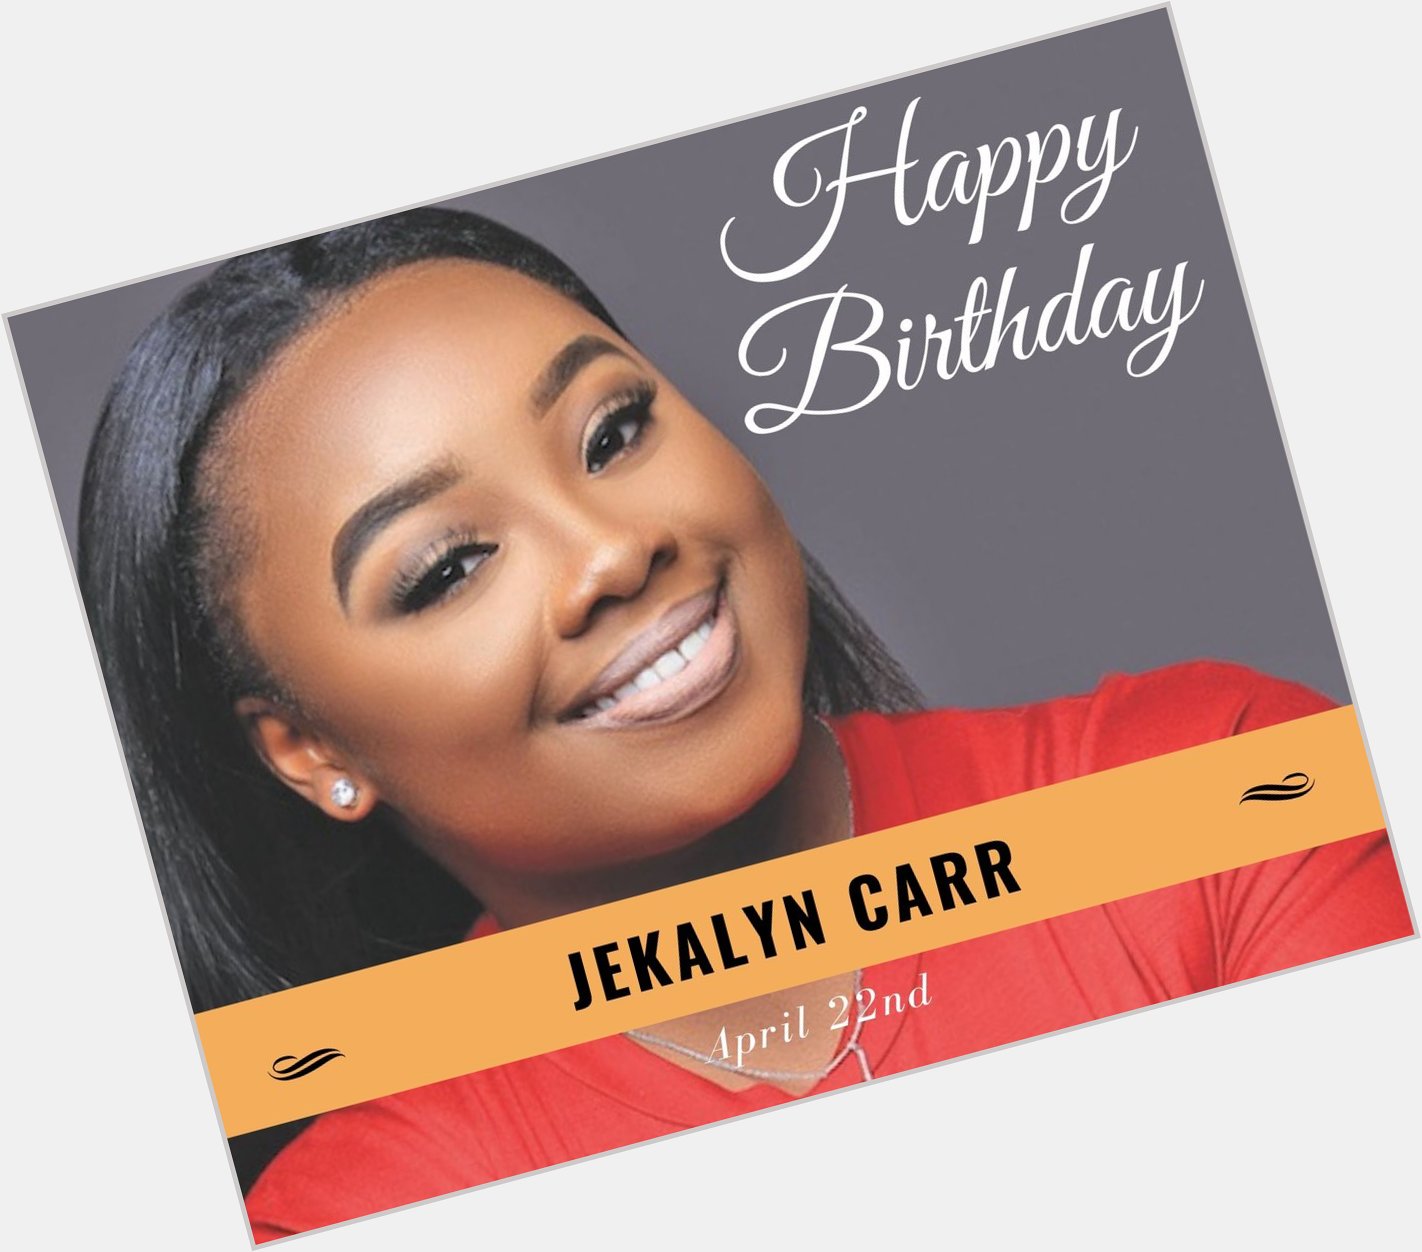 Happy Birthday, Jekalyn Carr!
*
*     